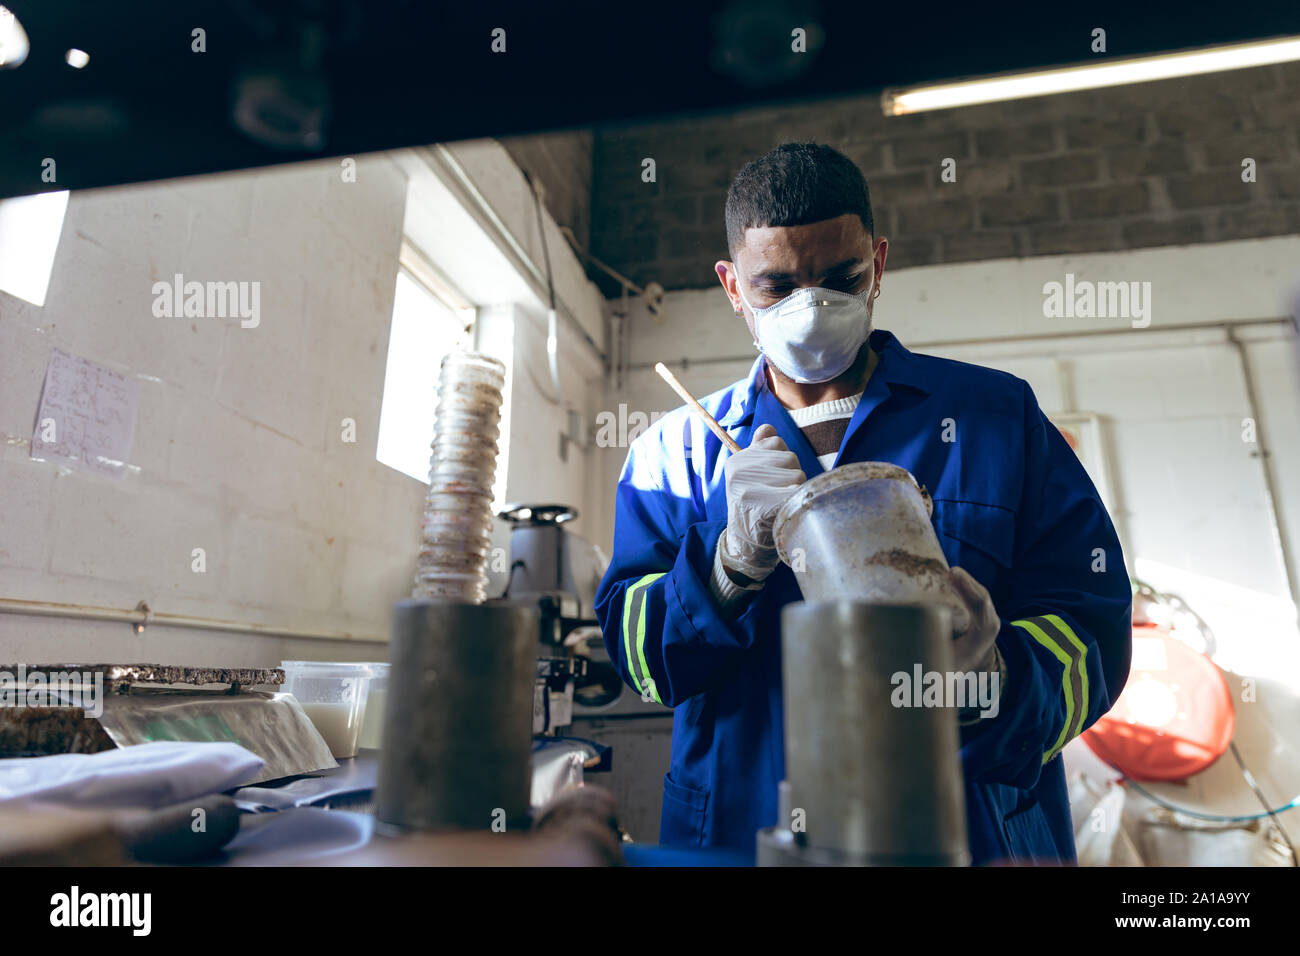 Jeune homme travaillant dans une usine d'équipement de sport Banque D'Images